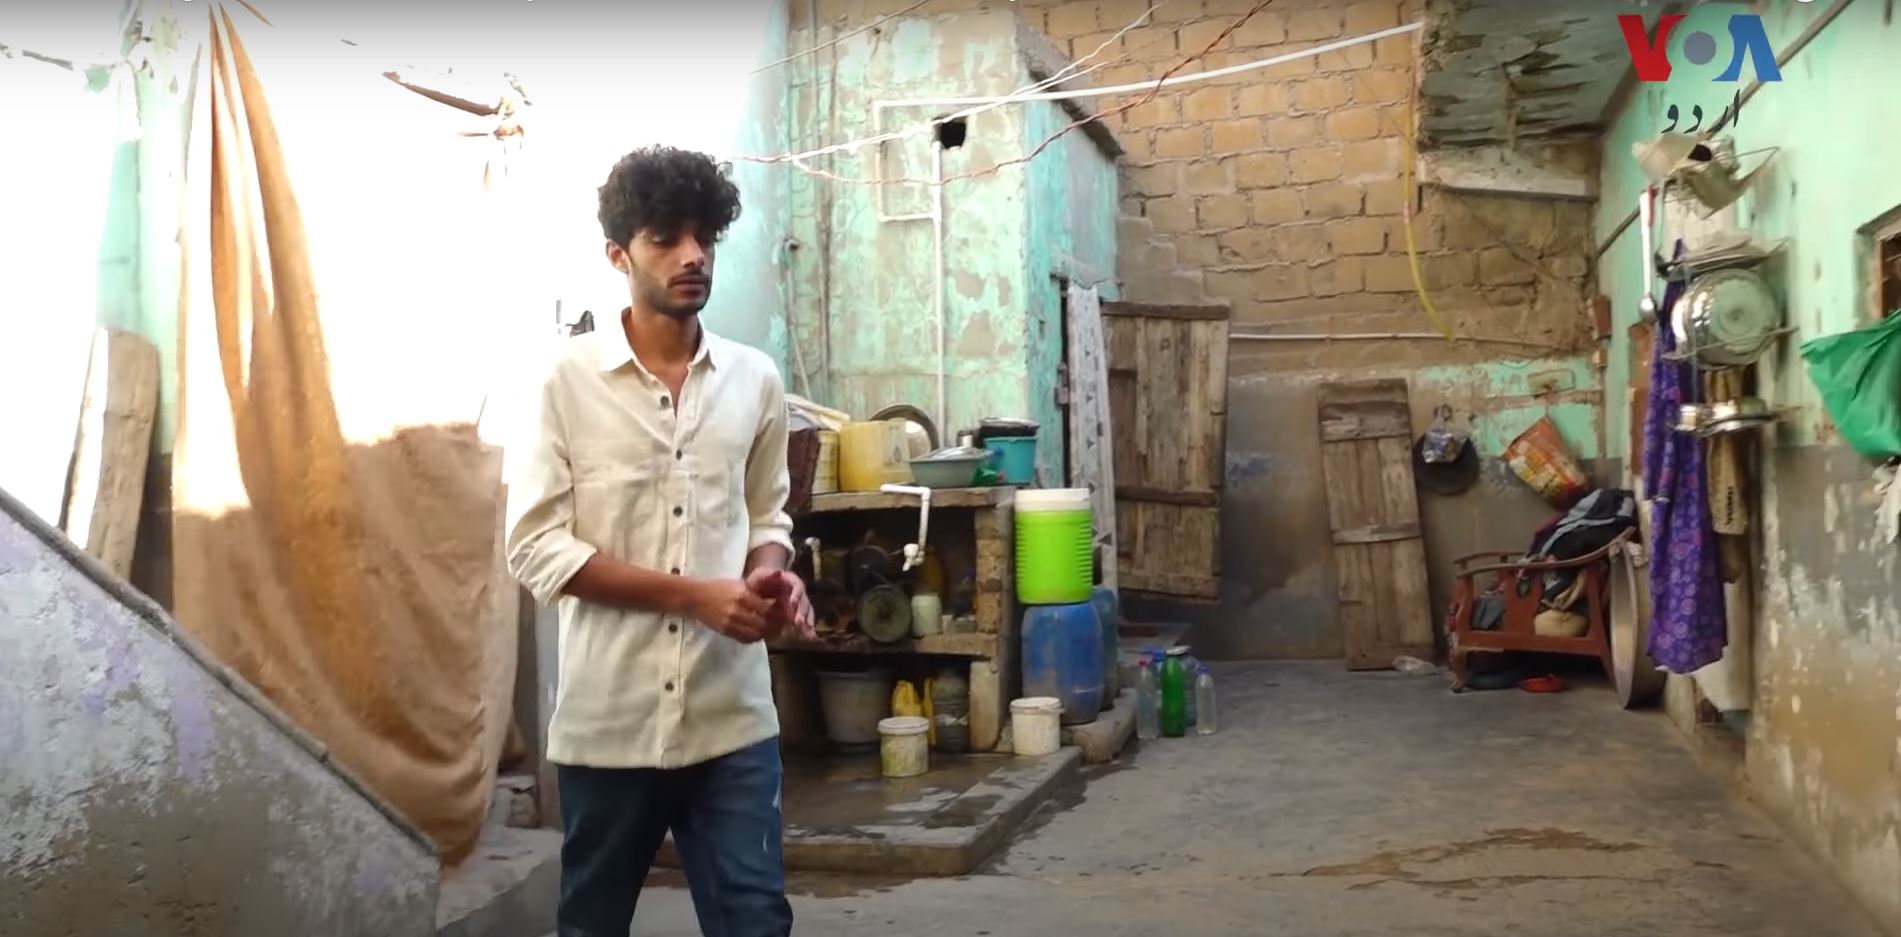 Kaifi Khalil at his home in Lyari